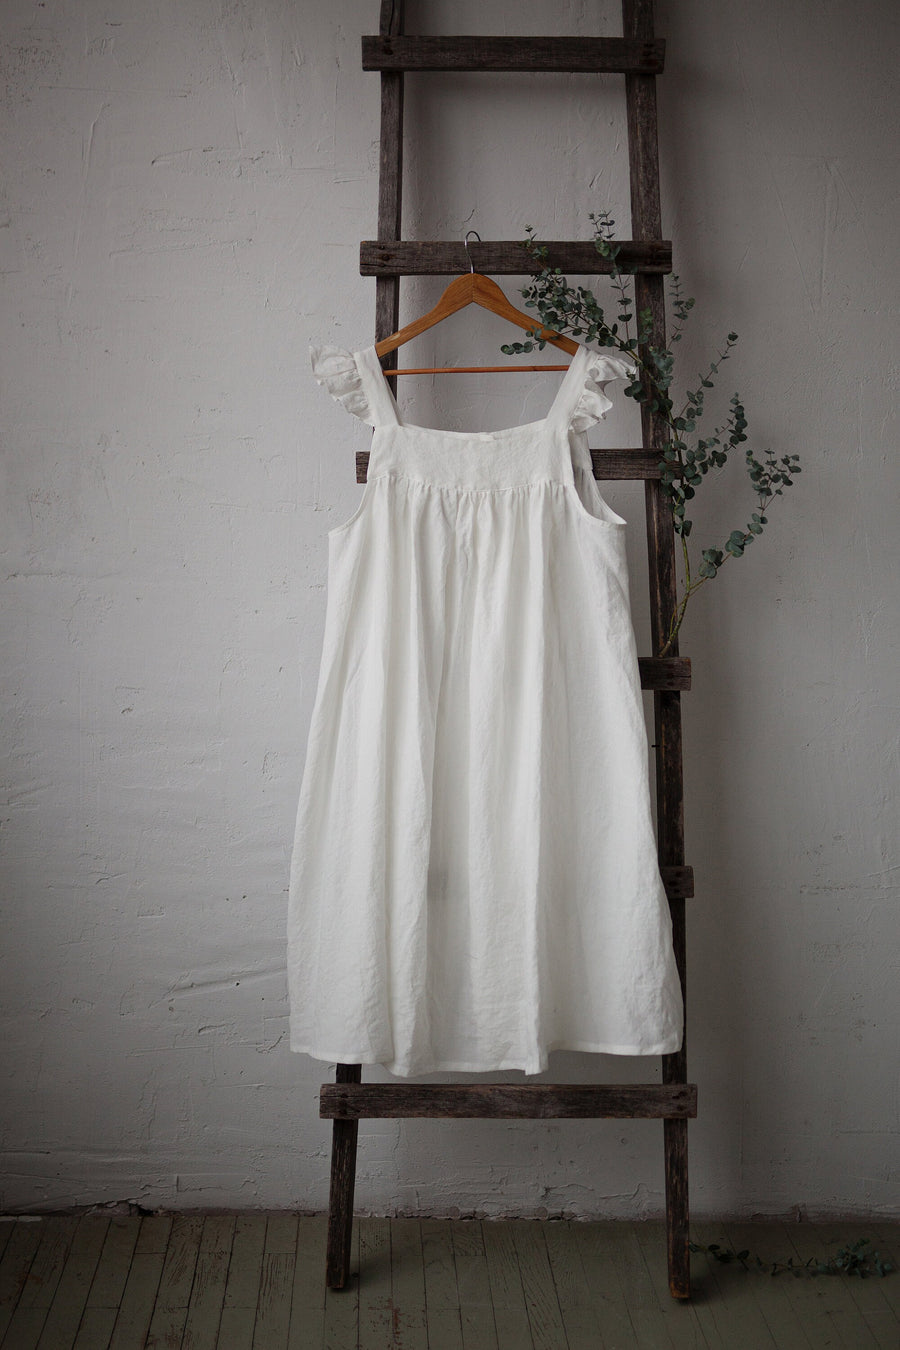 White Prairie Dress